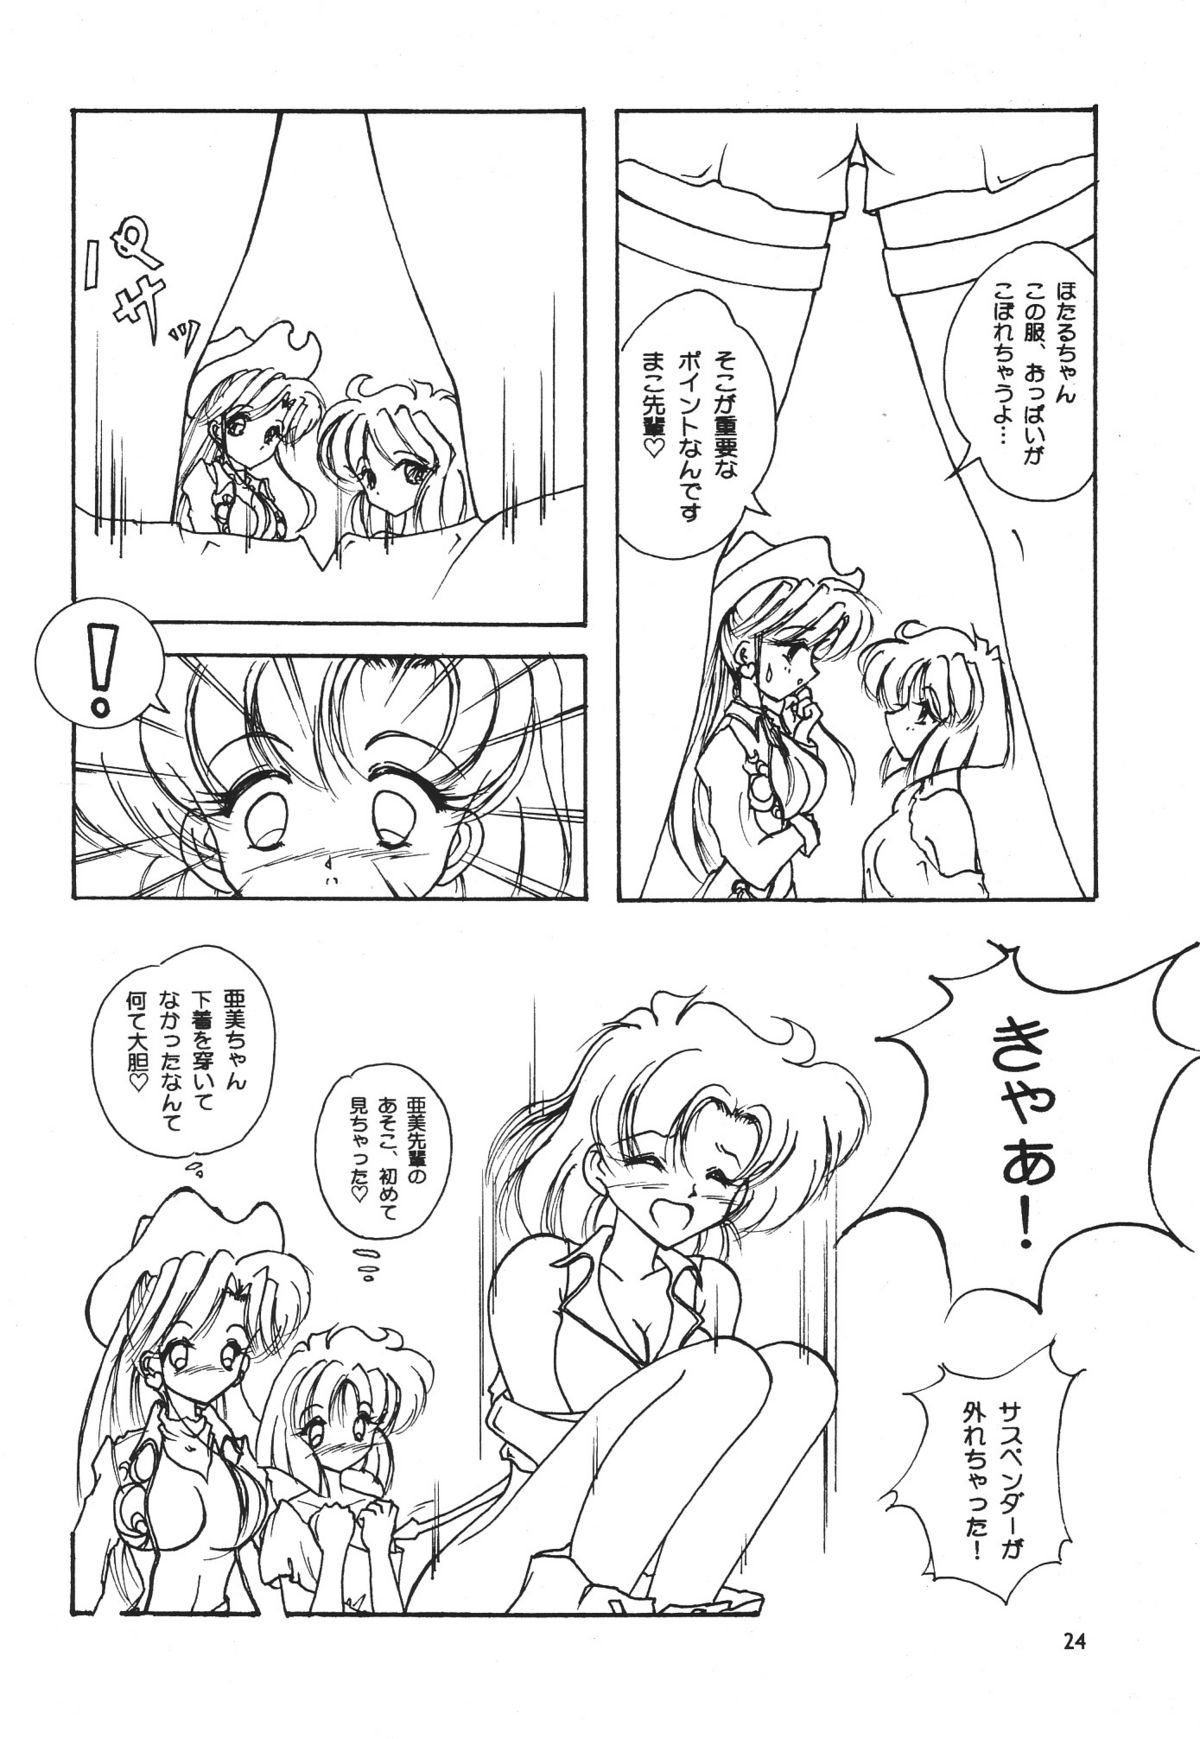 [Seishun No Nigirikobushi!] Favorite Visions 2 (Sailor Moon, AIKa) page 26 full